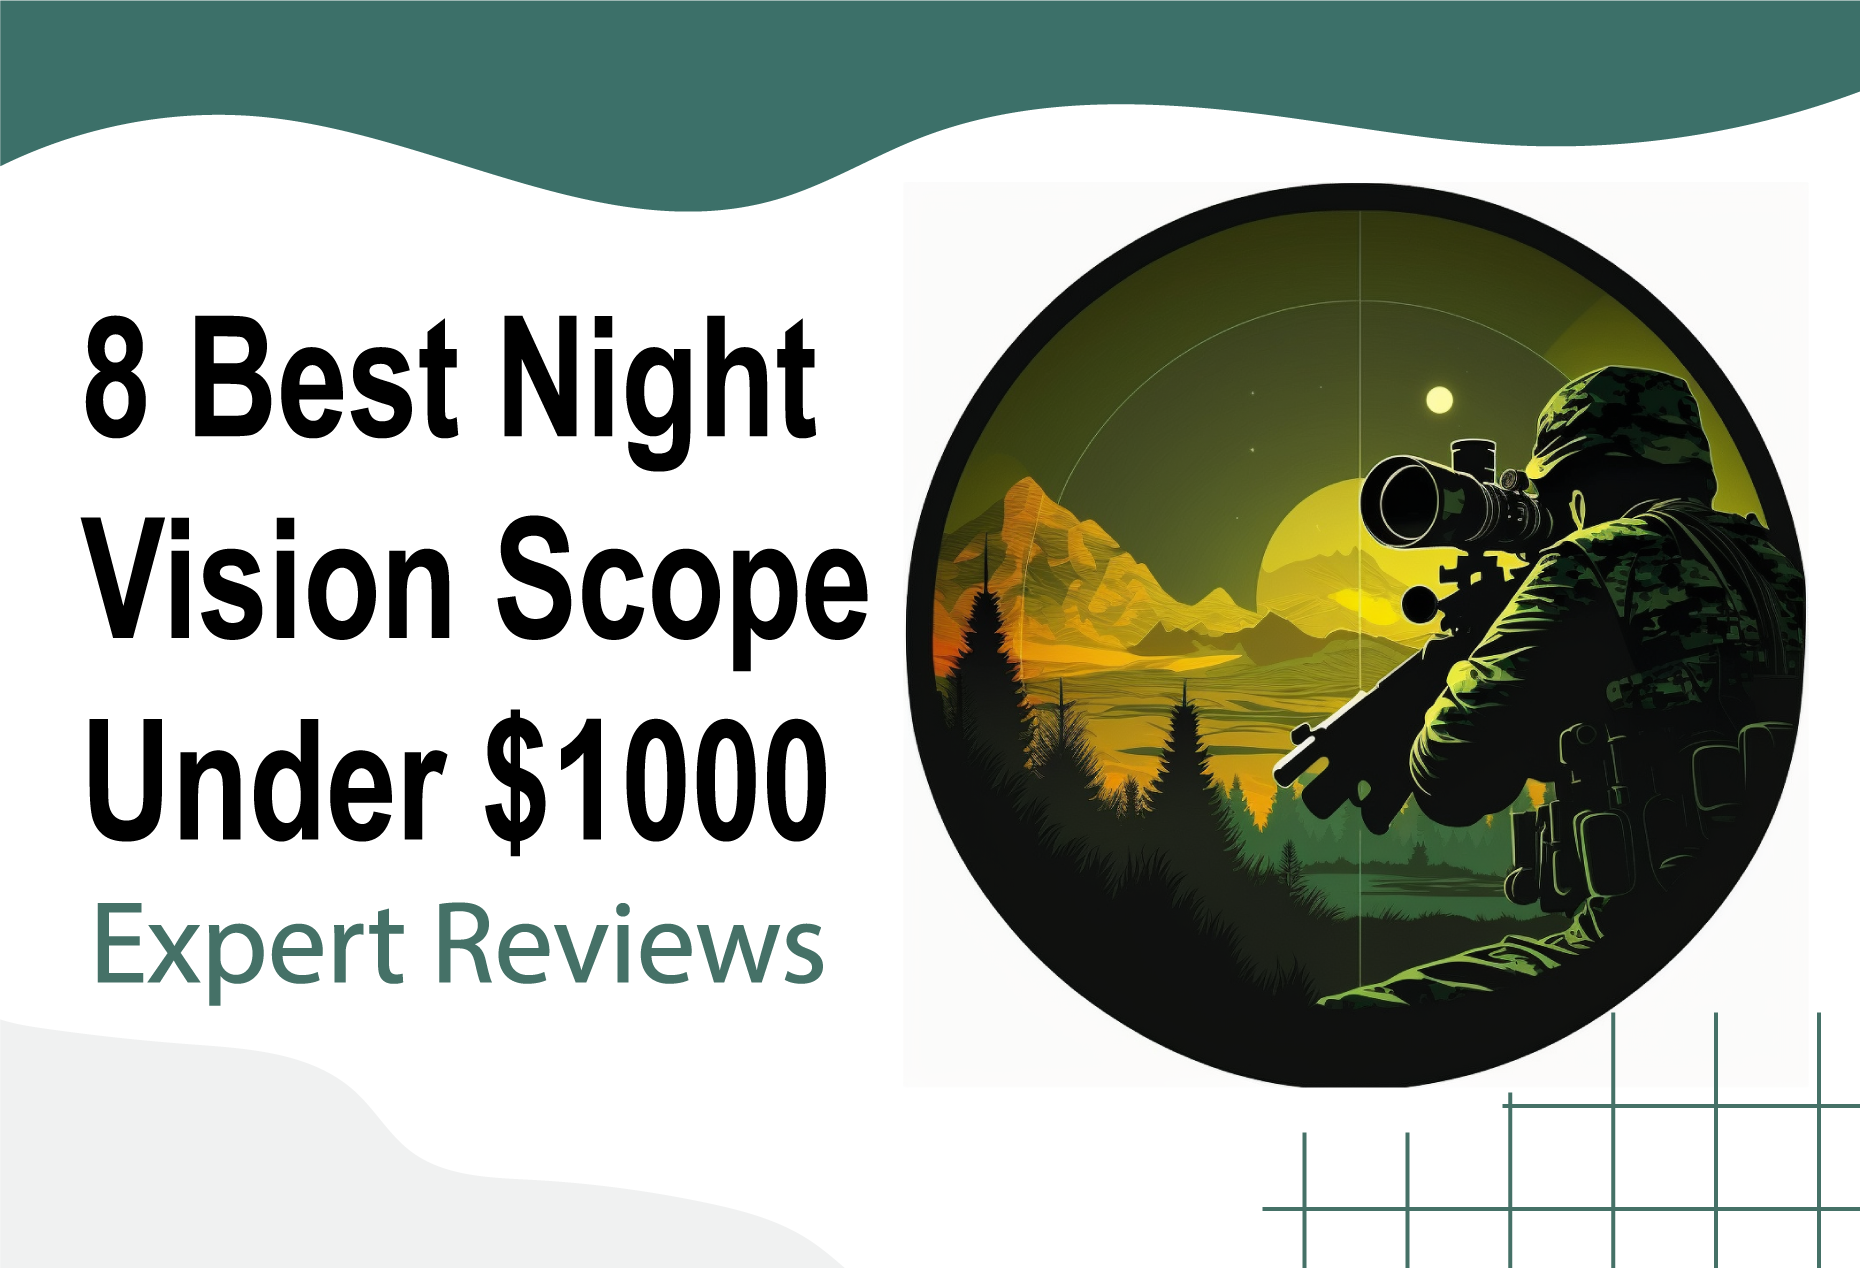 8 Best Night Vision Scope Under $1000